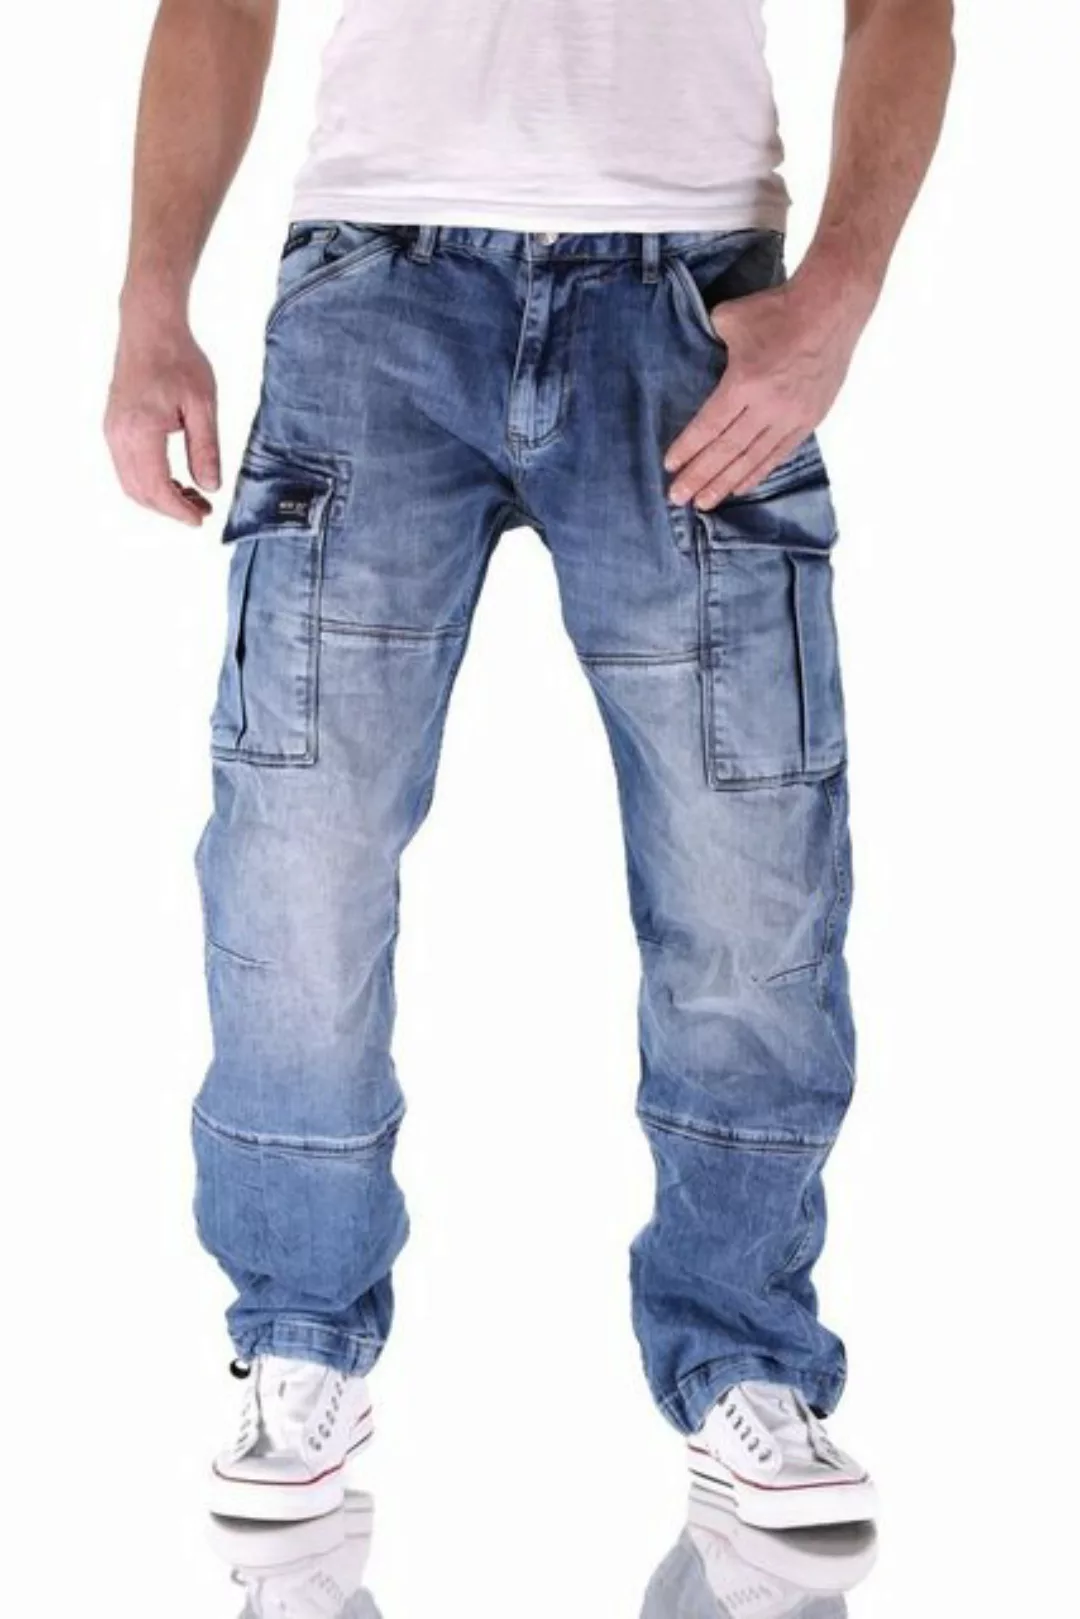 Big Seven Cargojeans Big Seven Brian Medium Blue Cargo Herren Jeans Hose günstig online kaufen